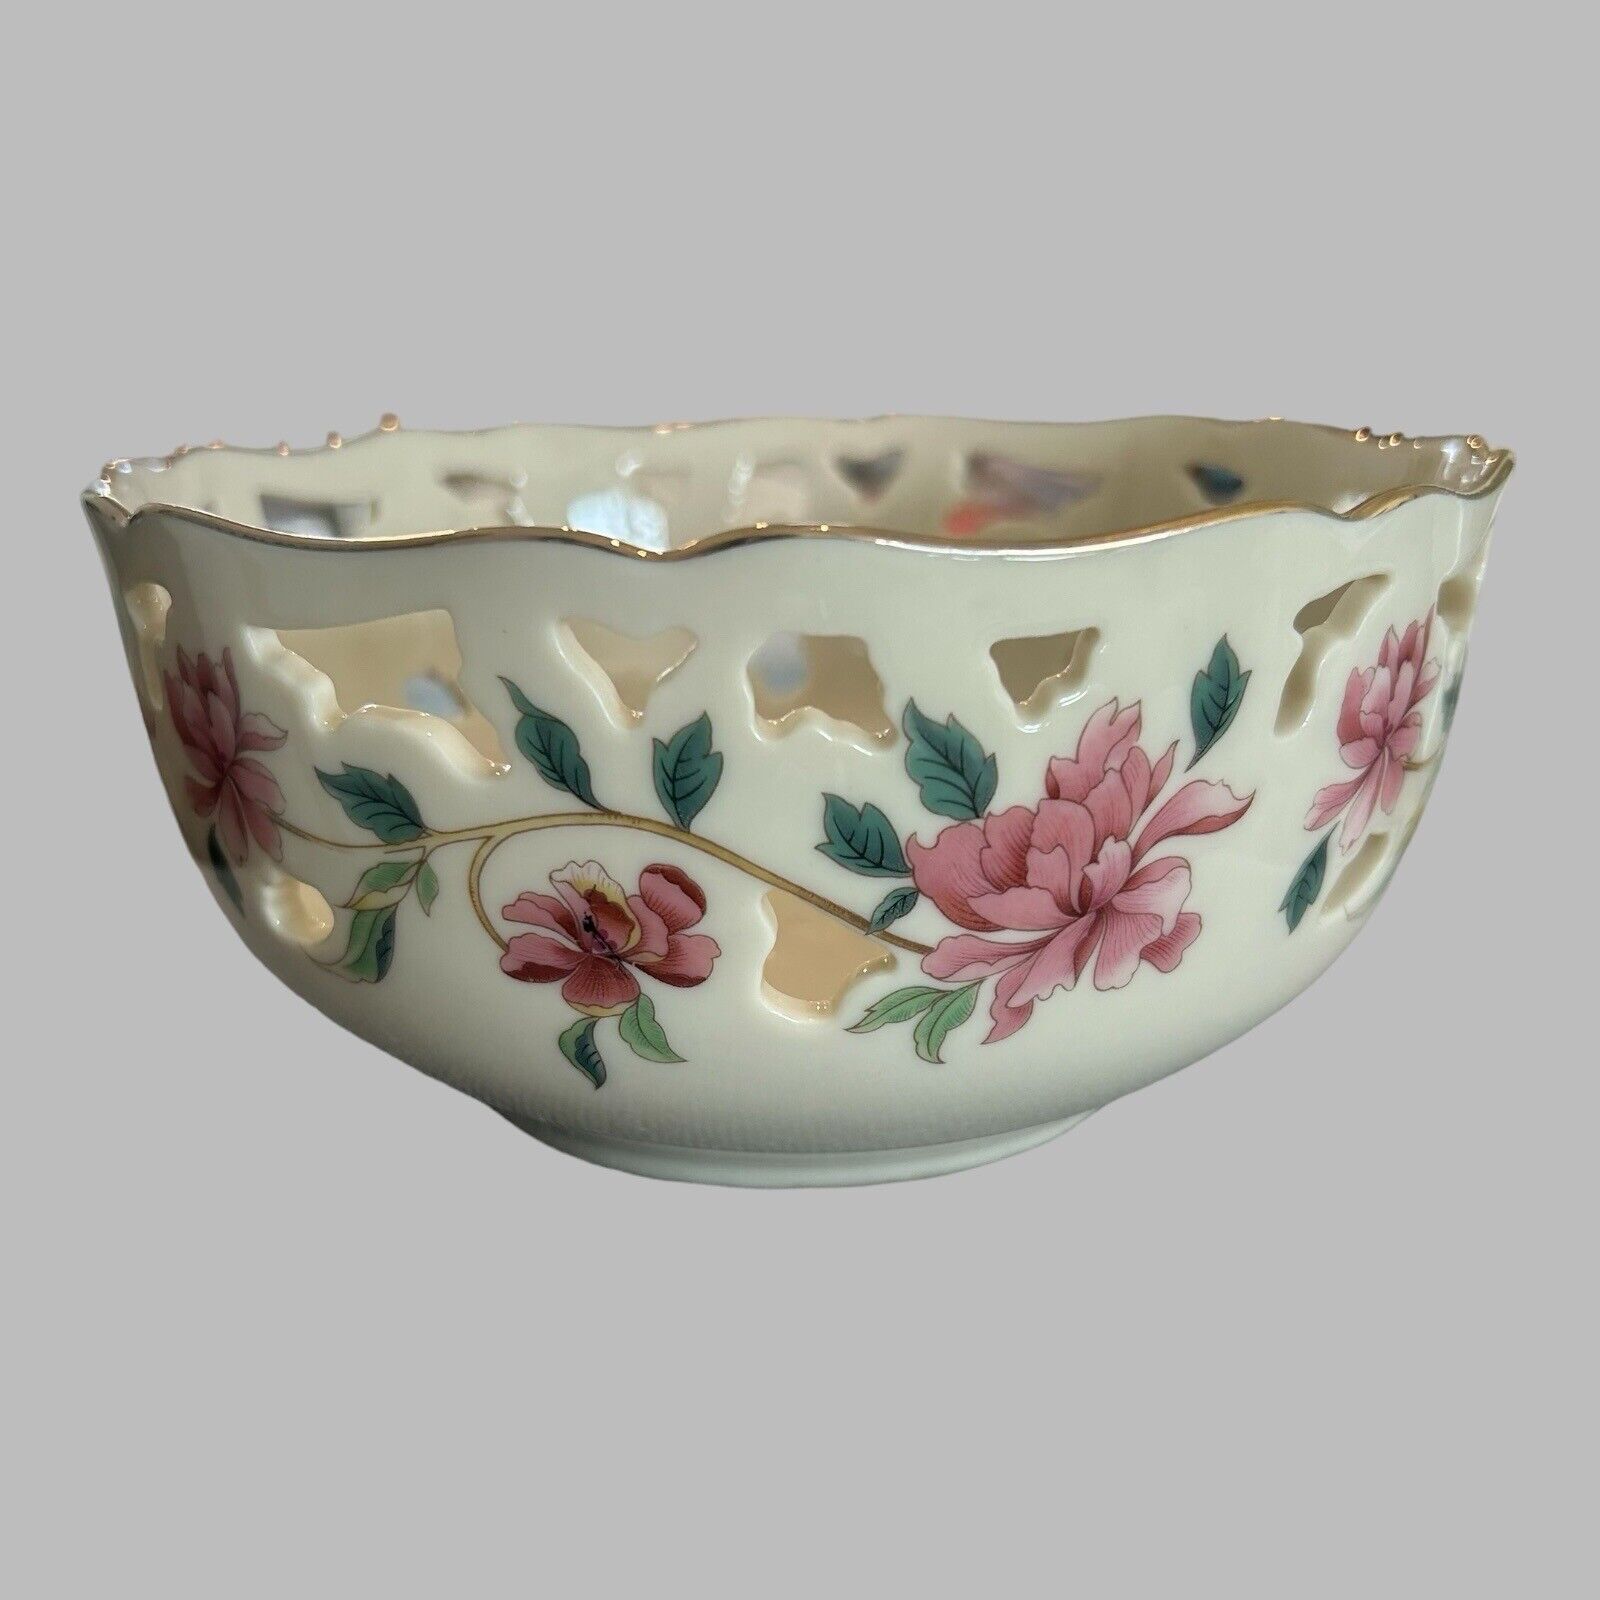 Lenox Barrington Pierced Bowl Vintage Gold Trim Pink Flowers Pot Pourri Holder